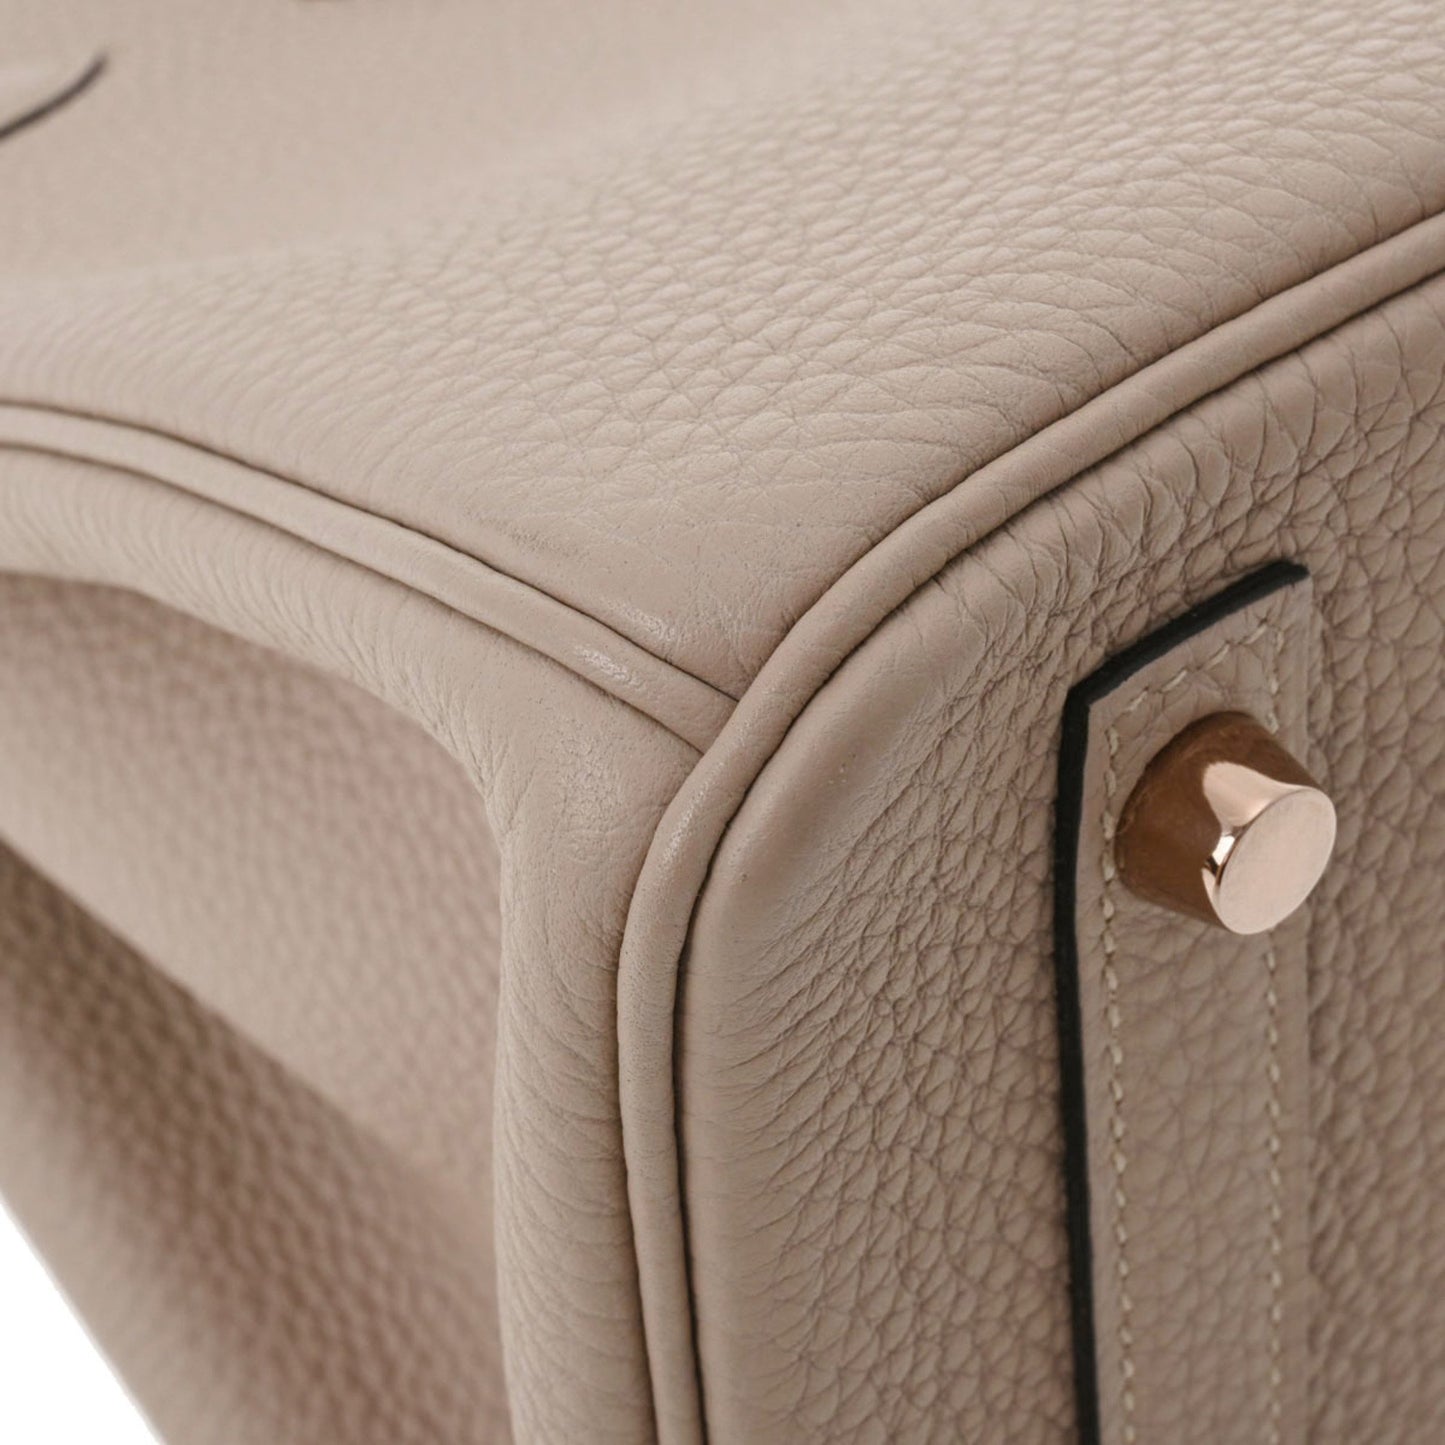 Hermes Women's Luxury Hermes Birkin 30 Togo Leather Handbag in Grey